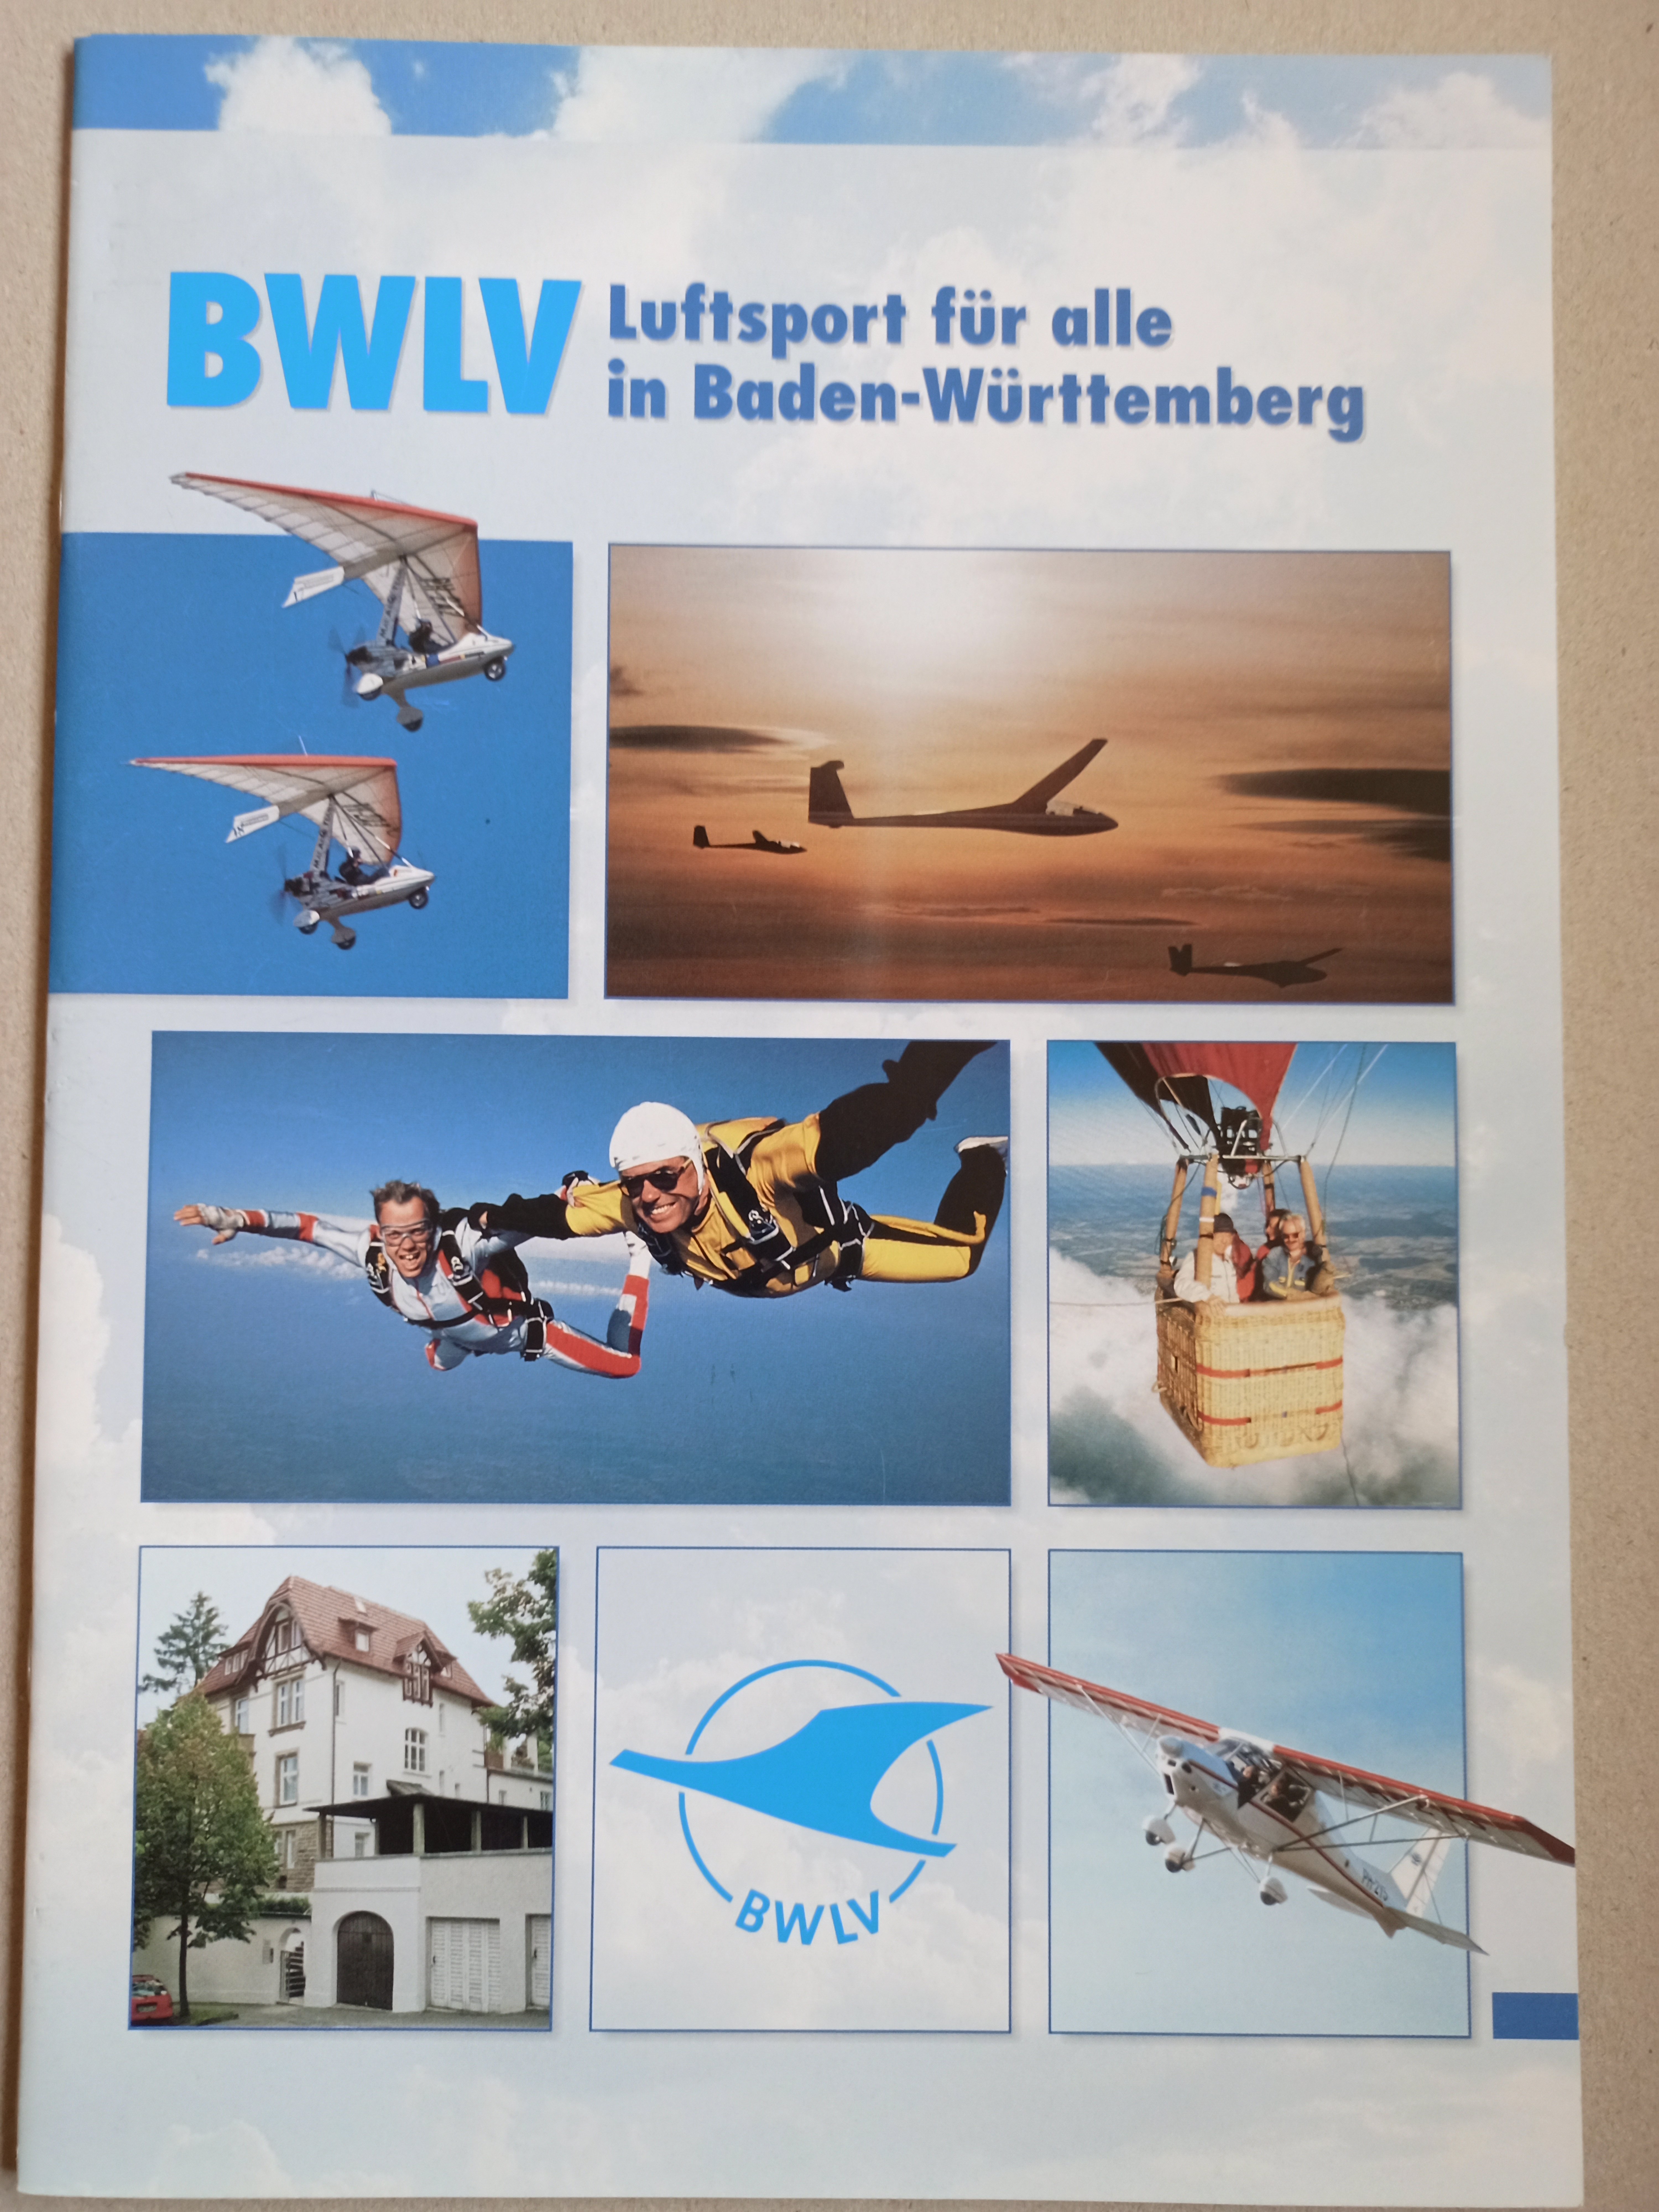 BWLV Luftport für alle (Deutsches Segelflugmuseum mit Modellflug CC BY-NC-SA)